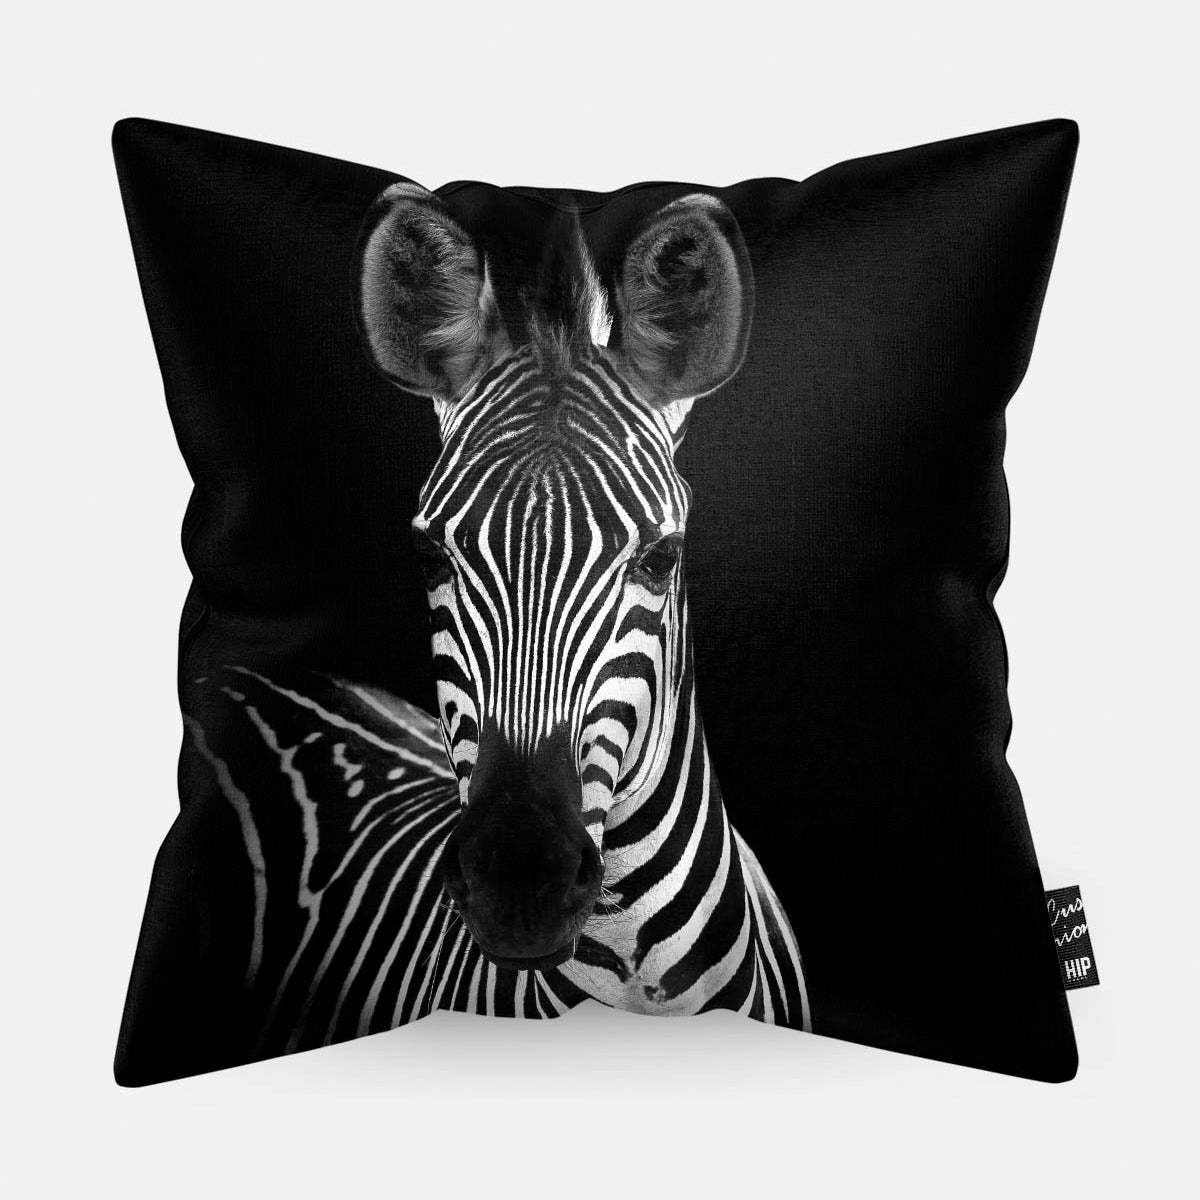 Kussen met een zebra in zwart-wit erop afgebeeld.